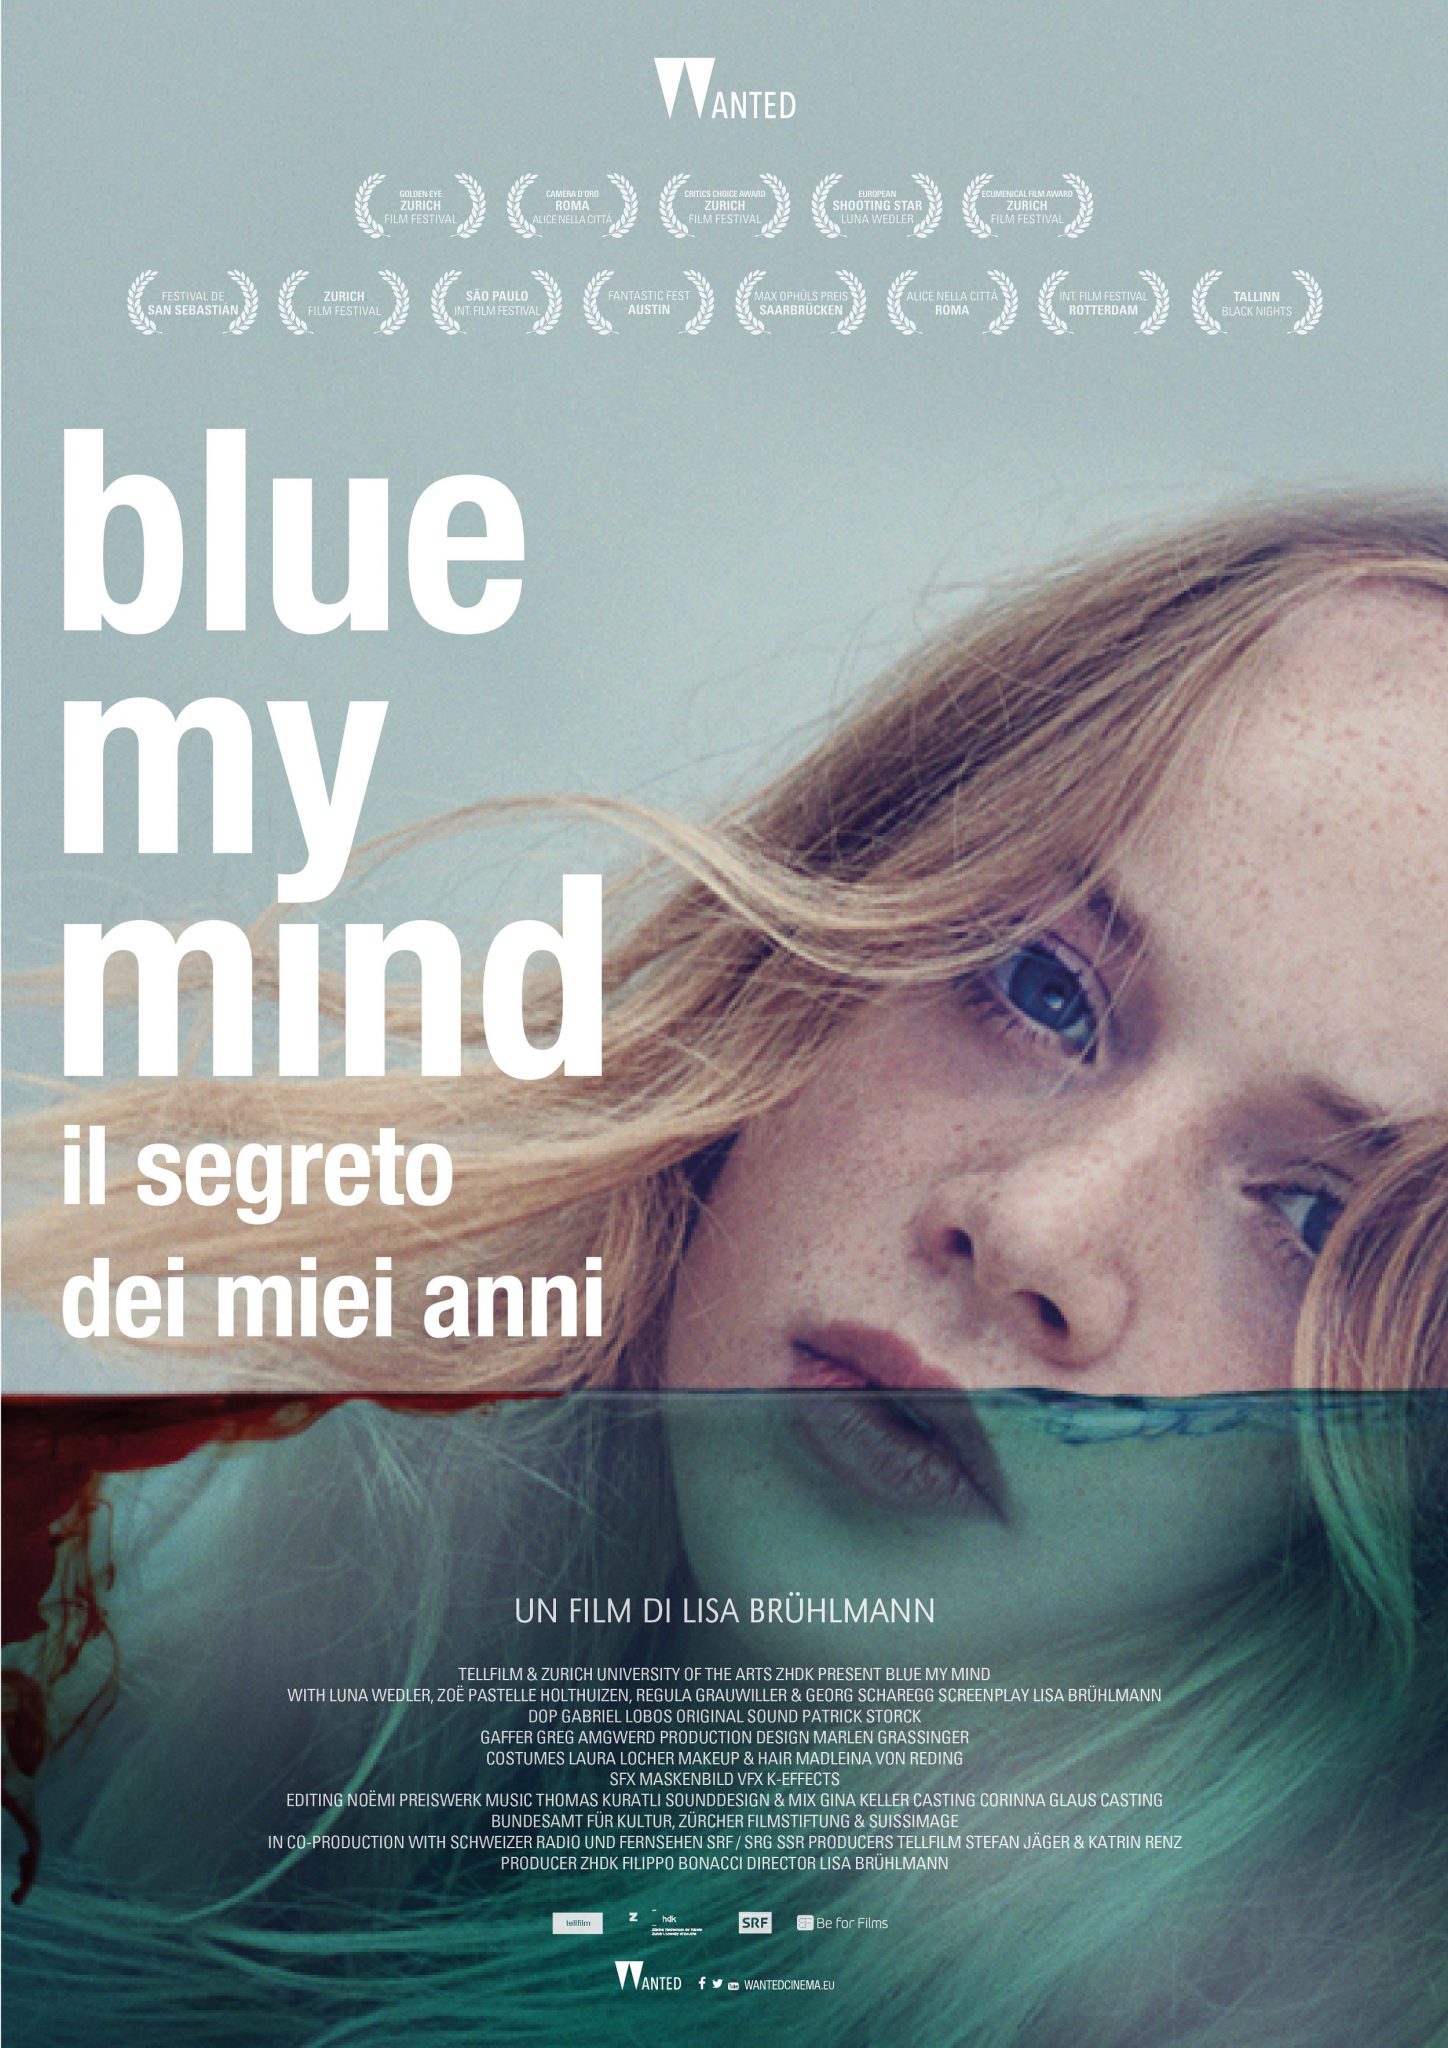 Blue my mind – Il segreto dei miei anni, al cinema la mitologia dell’adolescenza